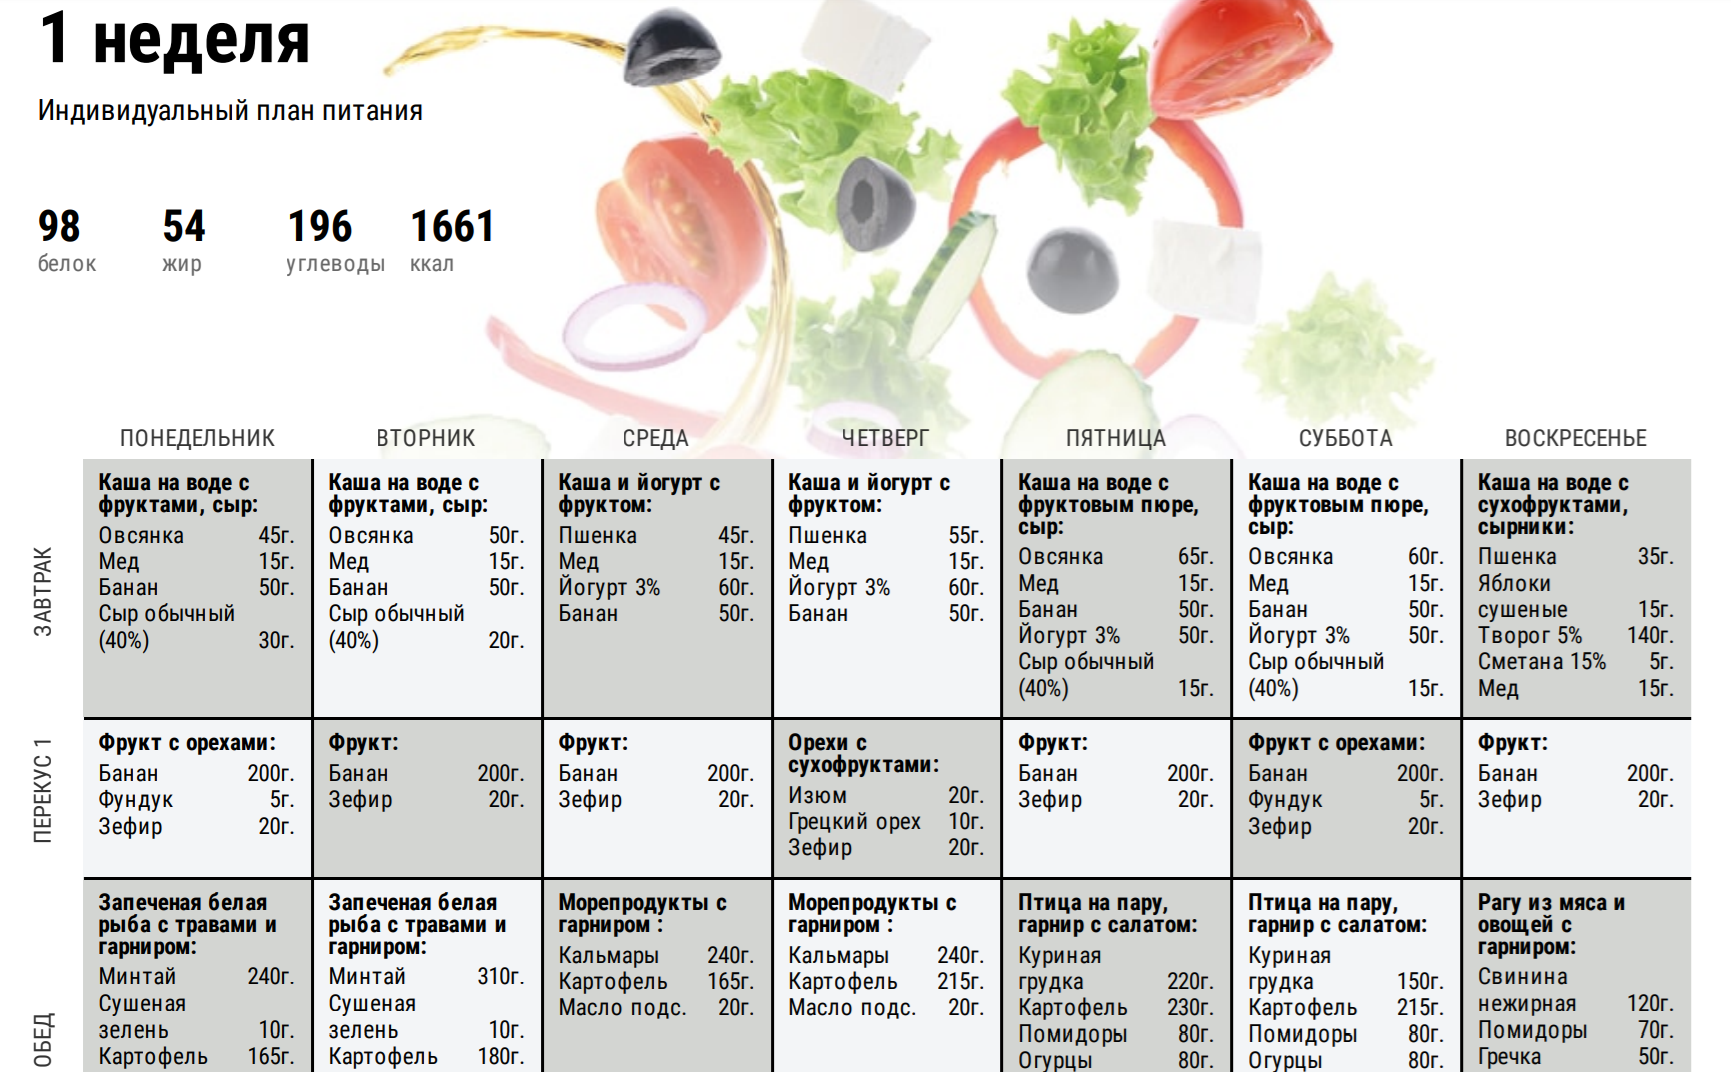 Яблочная диета: продукты, меню, результаты, отзывы